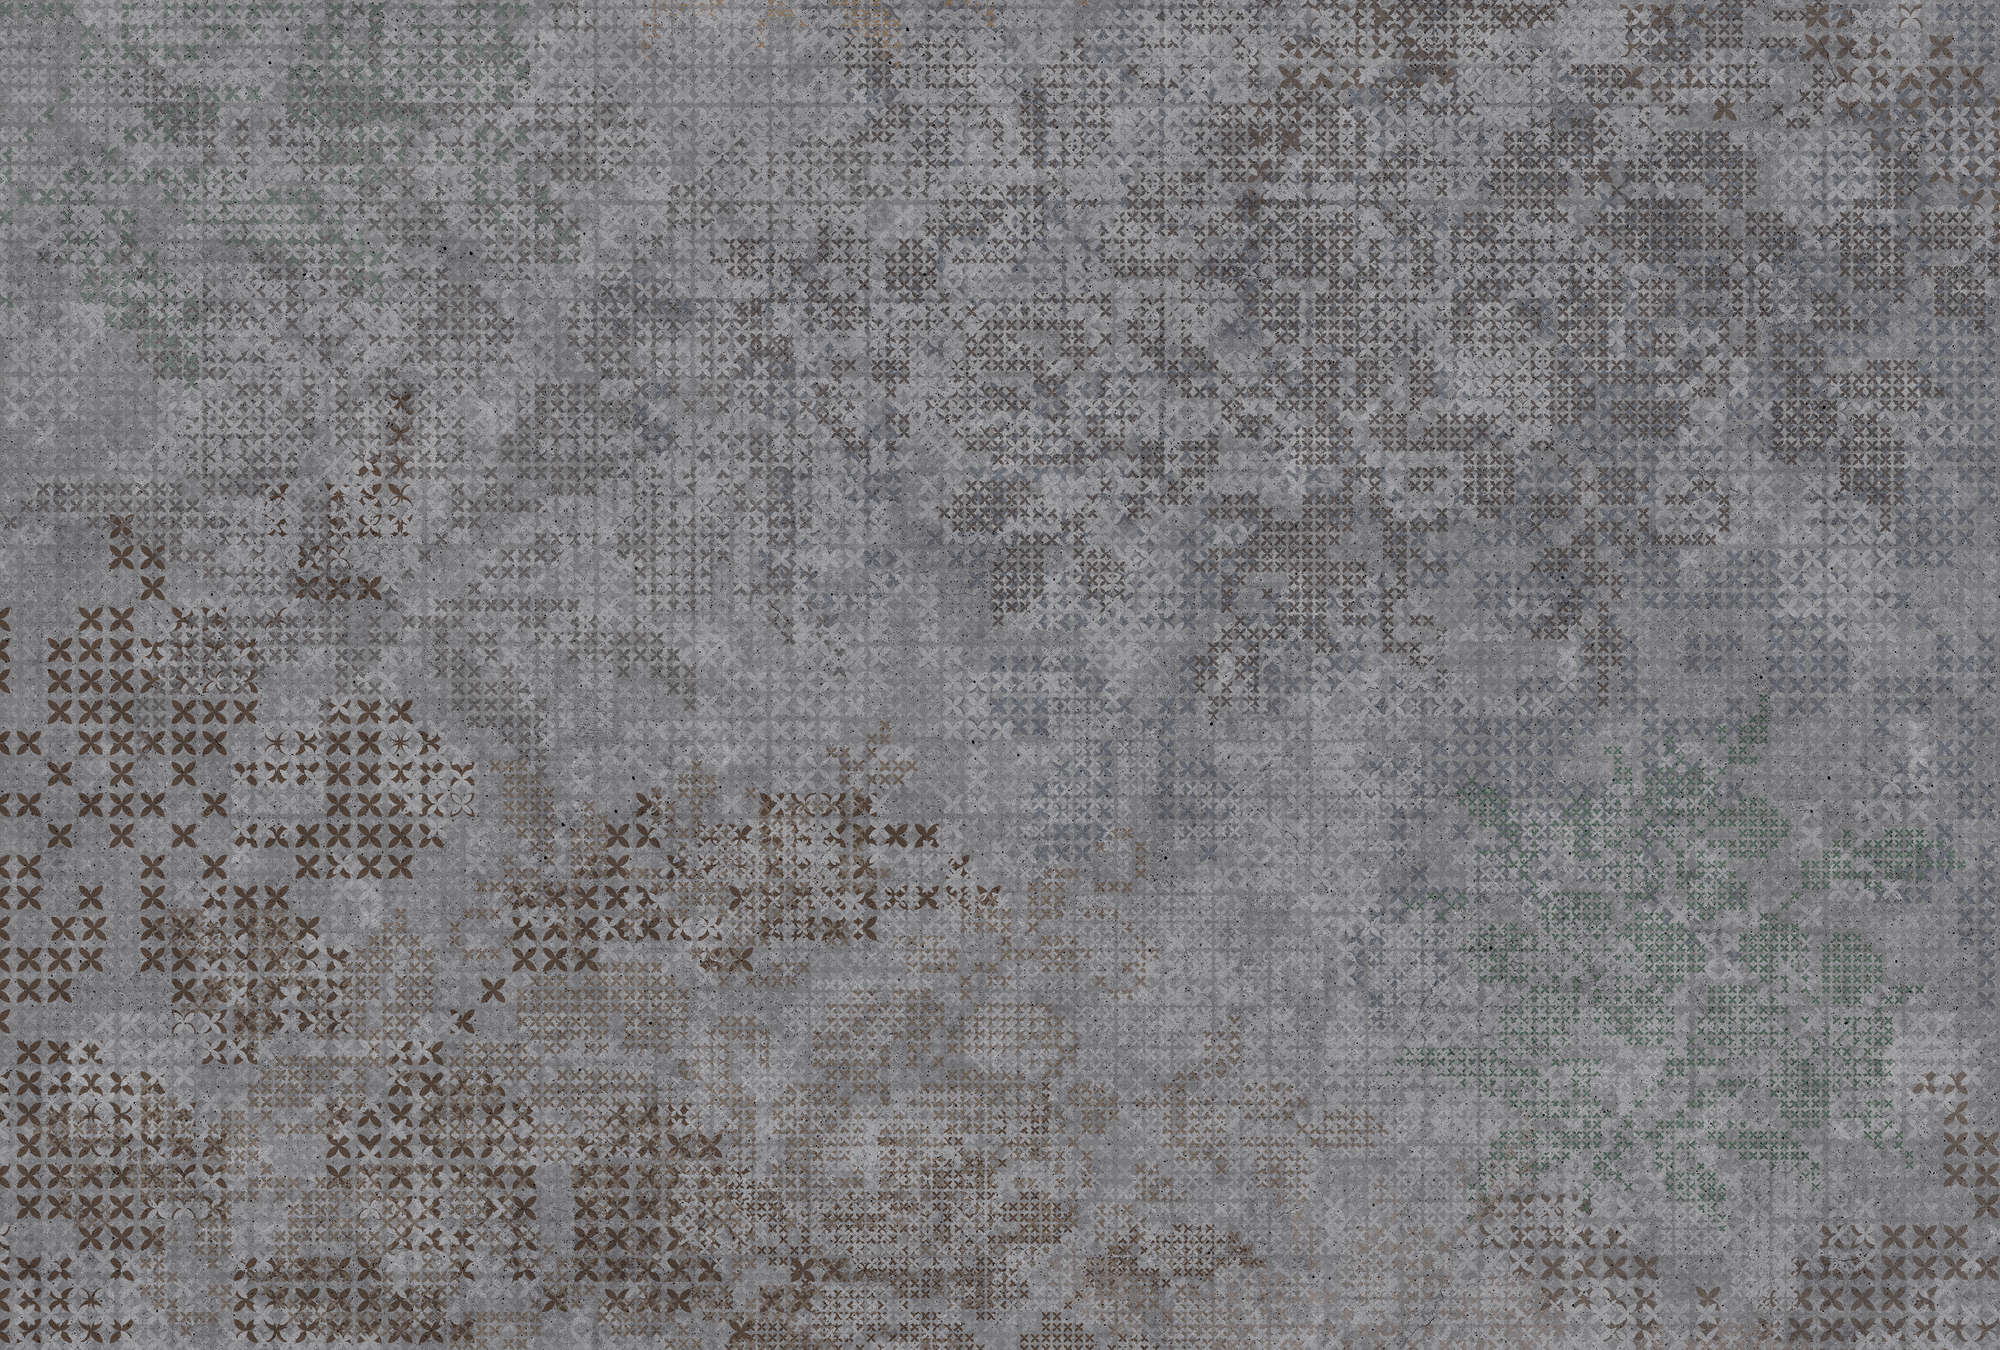             Photo wallpaper cross pattern in pixel style - grey, black
        